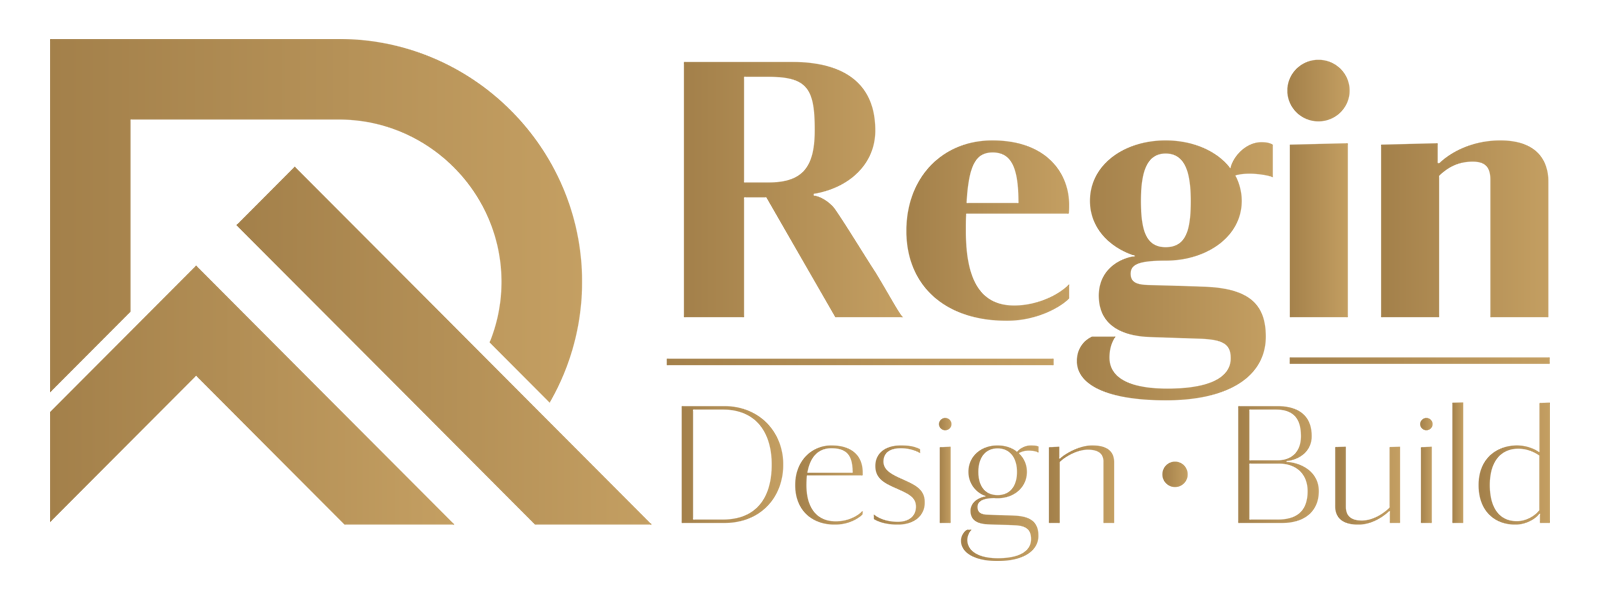 Regin Design Build